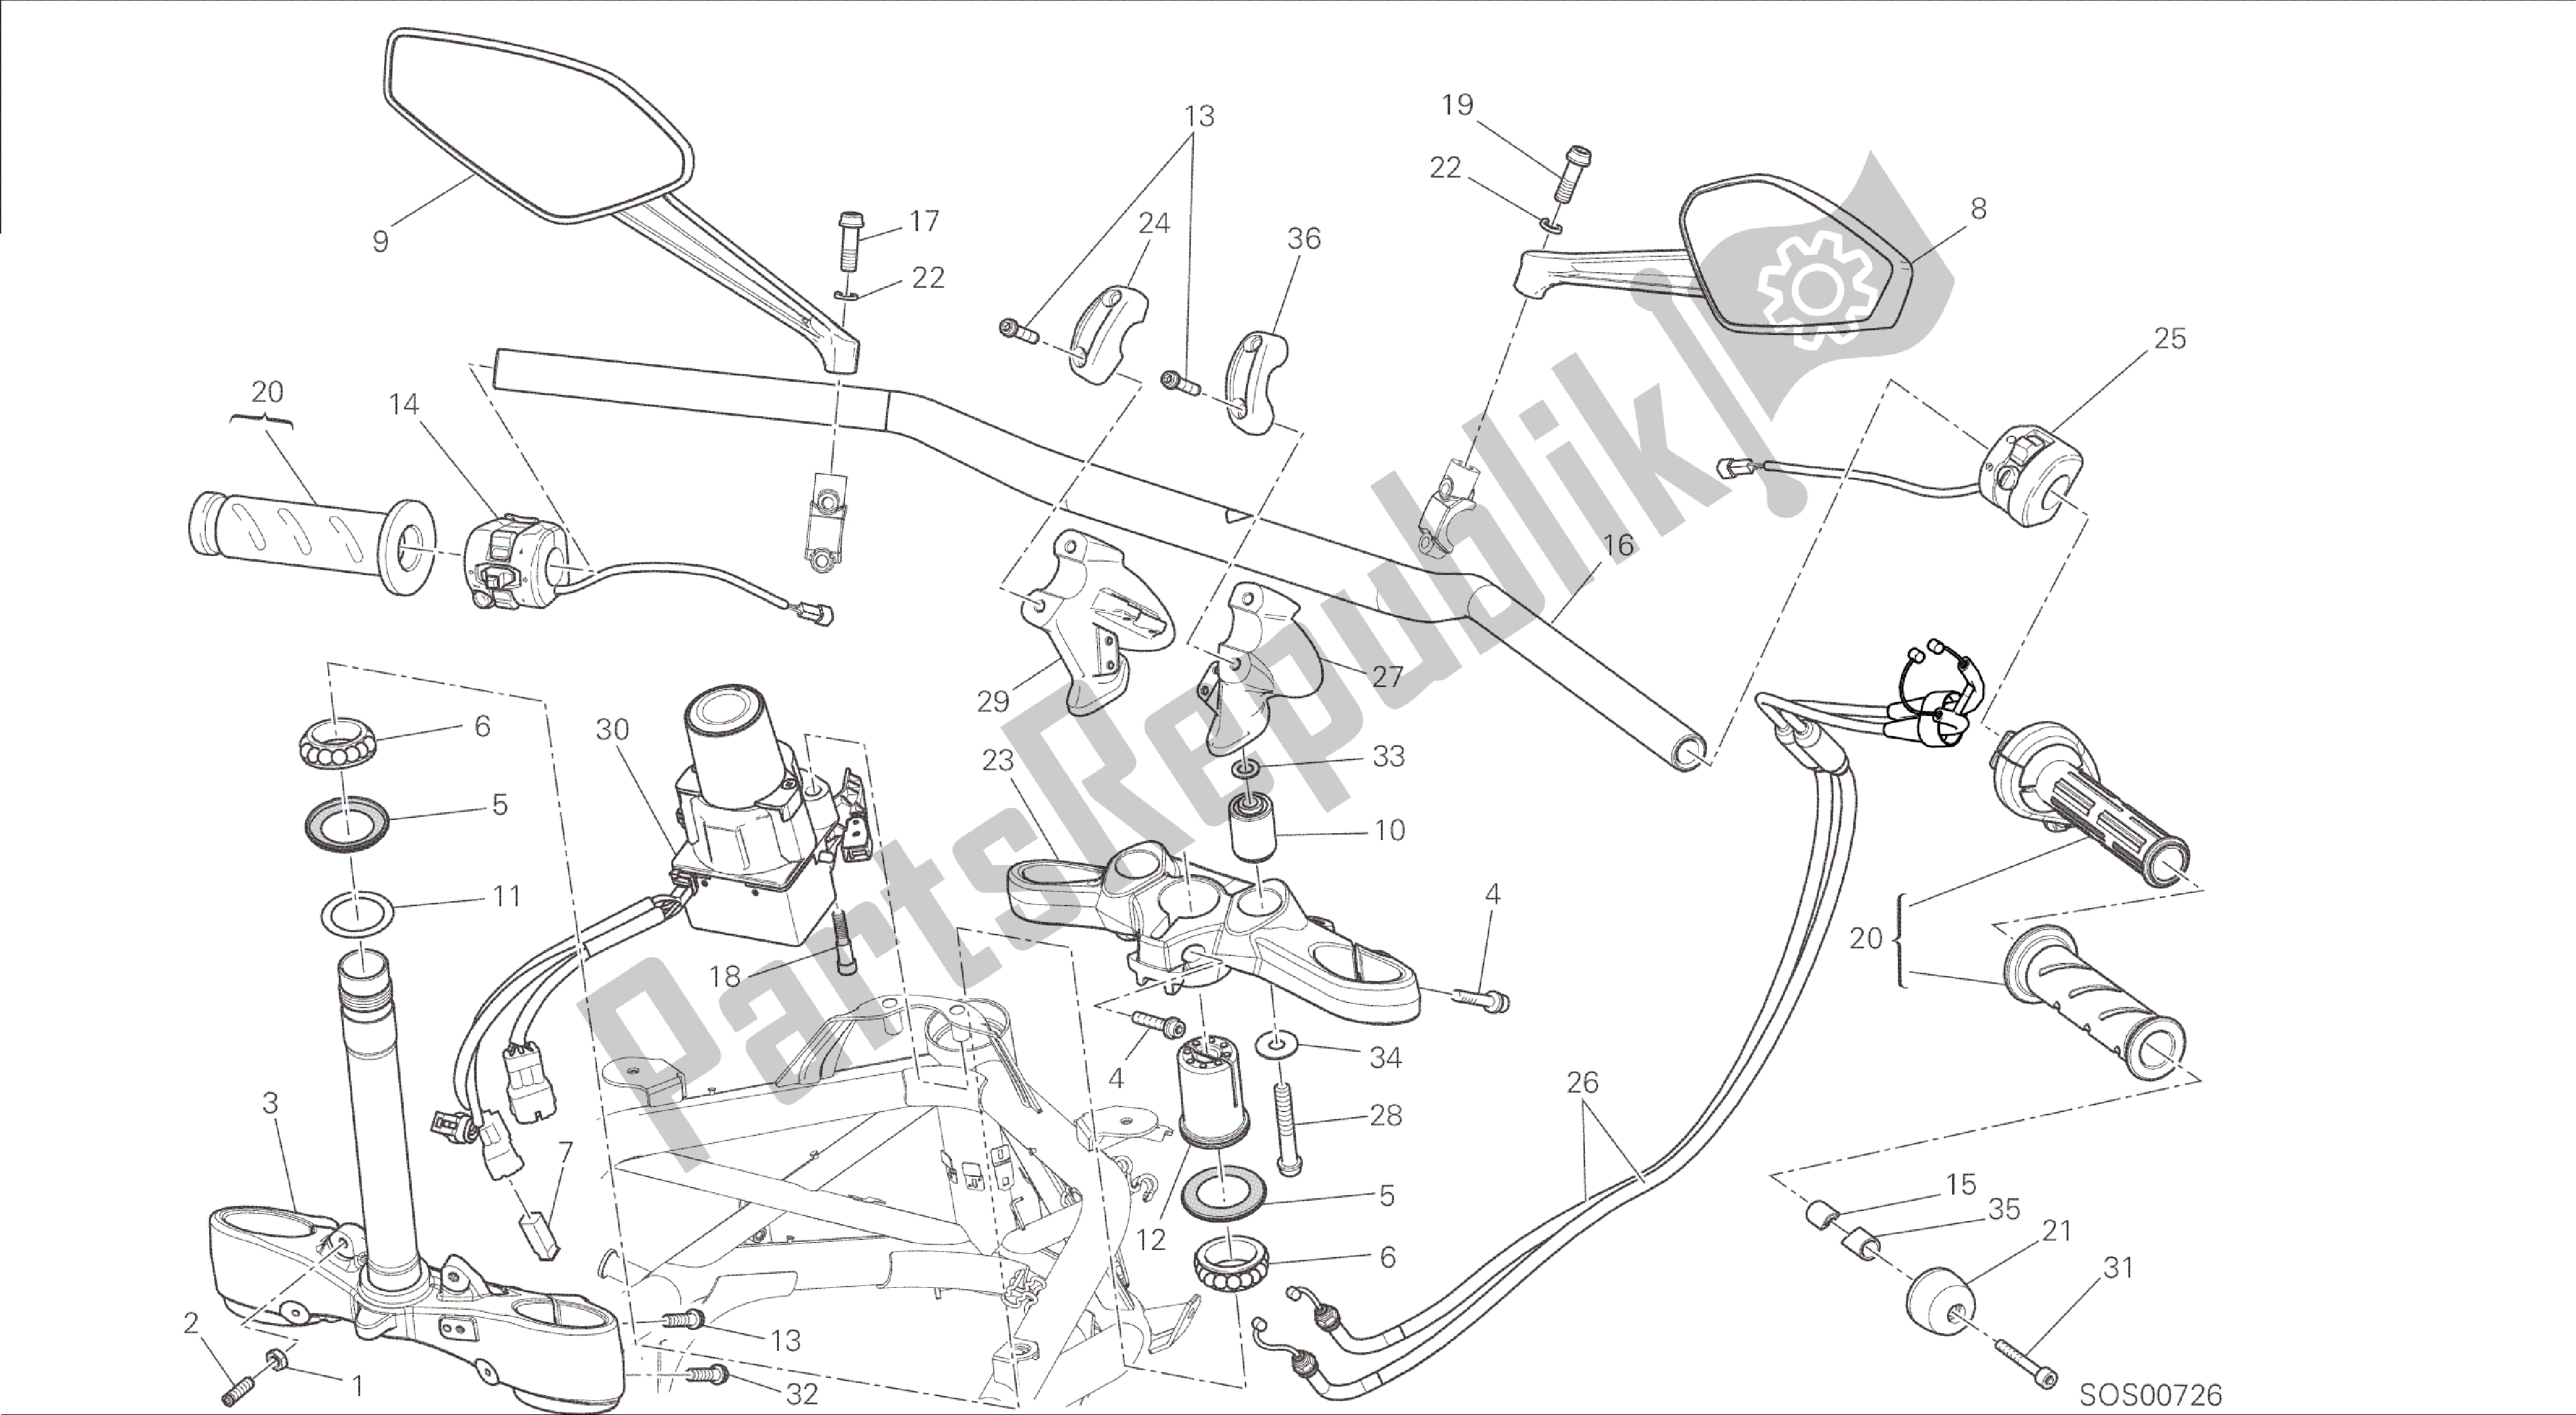 Tutte le parti per il Disegno 021 - Telaio Gruppo Manubrio [mod: Dvl] del Ducati Diavel 1200 2015